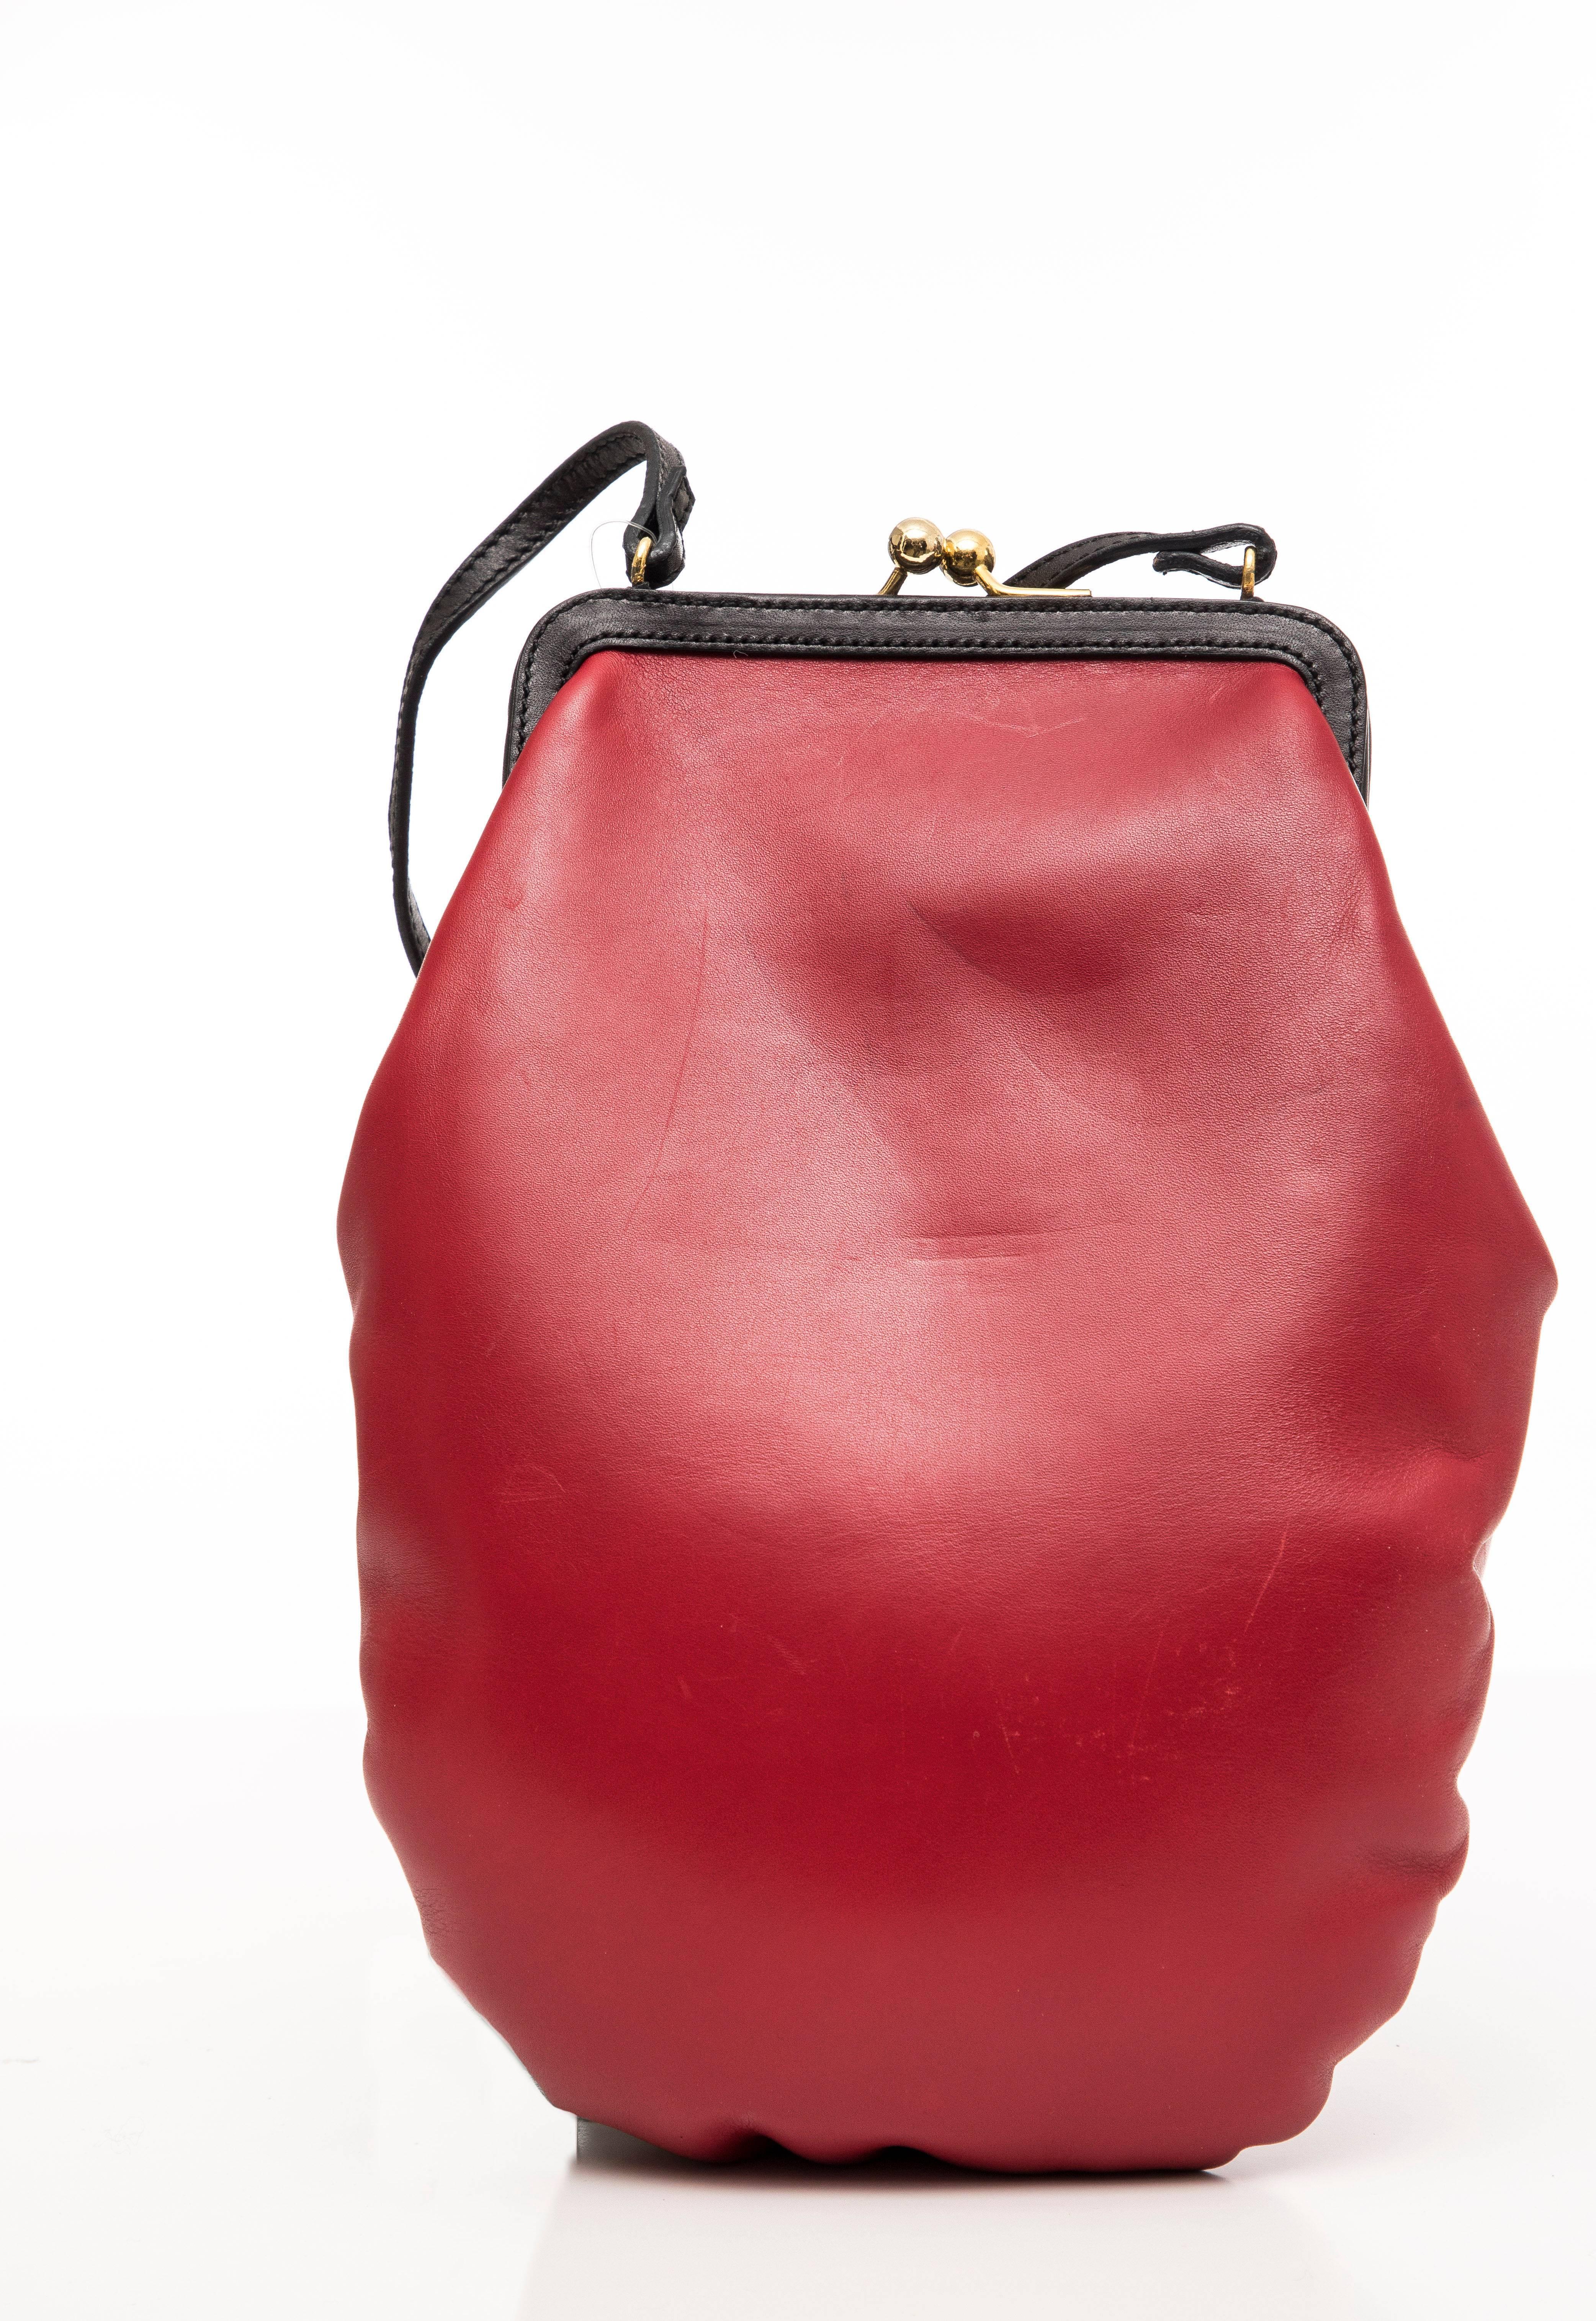 Moschino, printemps 2001, sac à main en cuir rouge et noir avec gant de boxe, ferrures métalliques dorées, bandoulière plate unique, lacet à l'extérieur, doublure en tissu noir et fermeture à baiser sur le dessus.

Hauteur 11.5, Largeur 7.5,